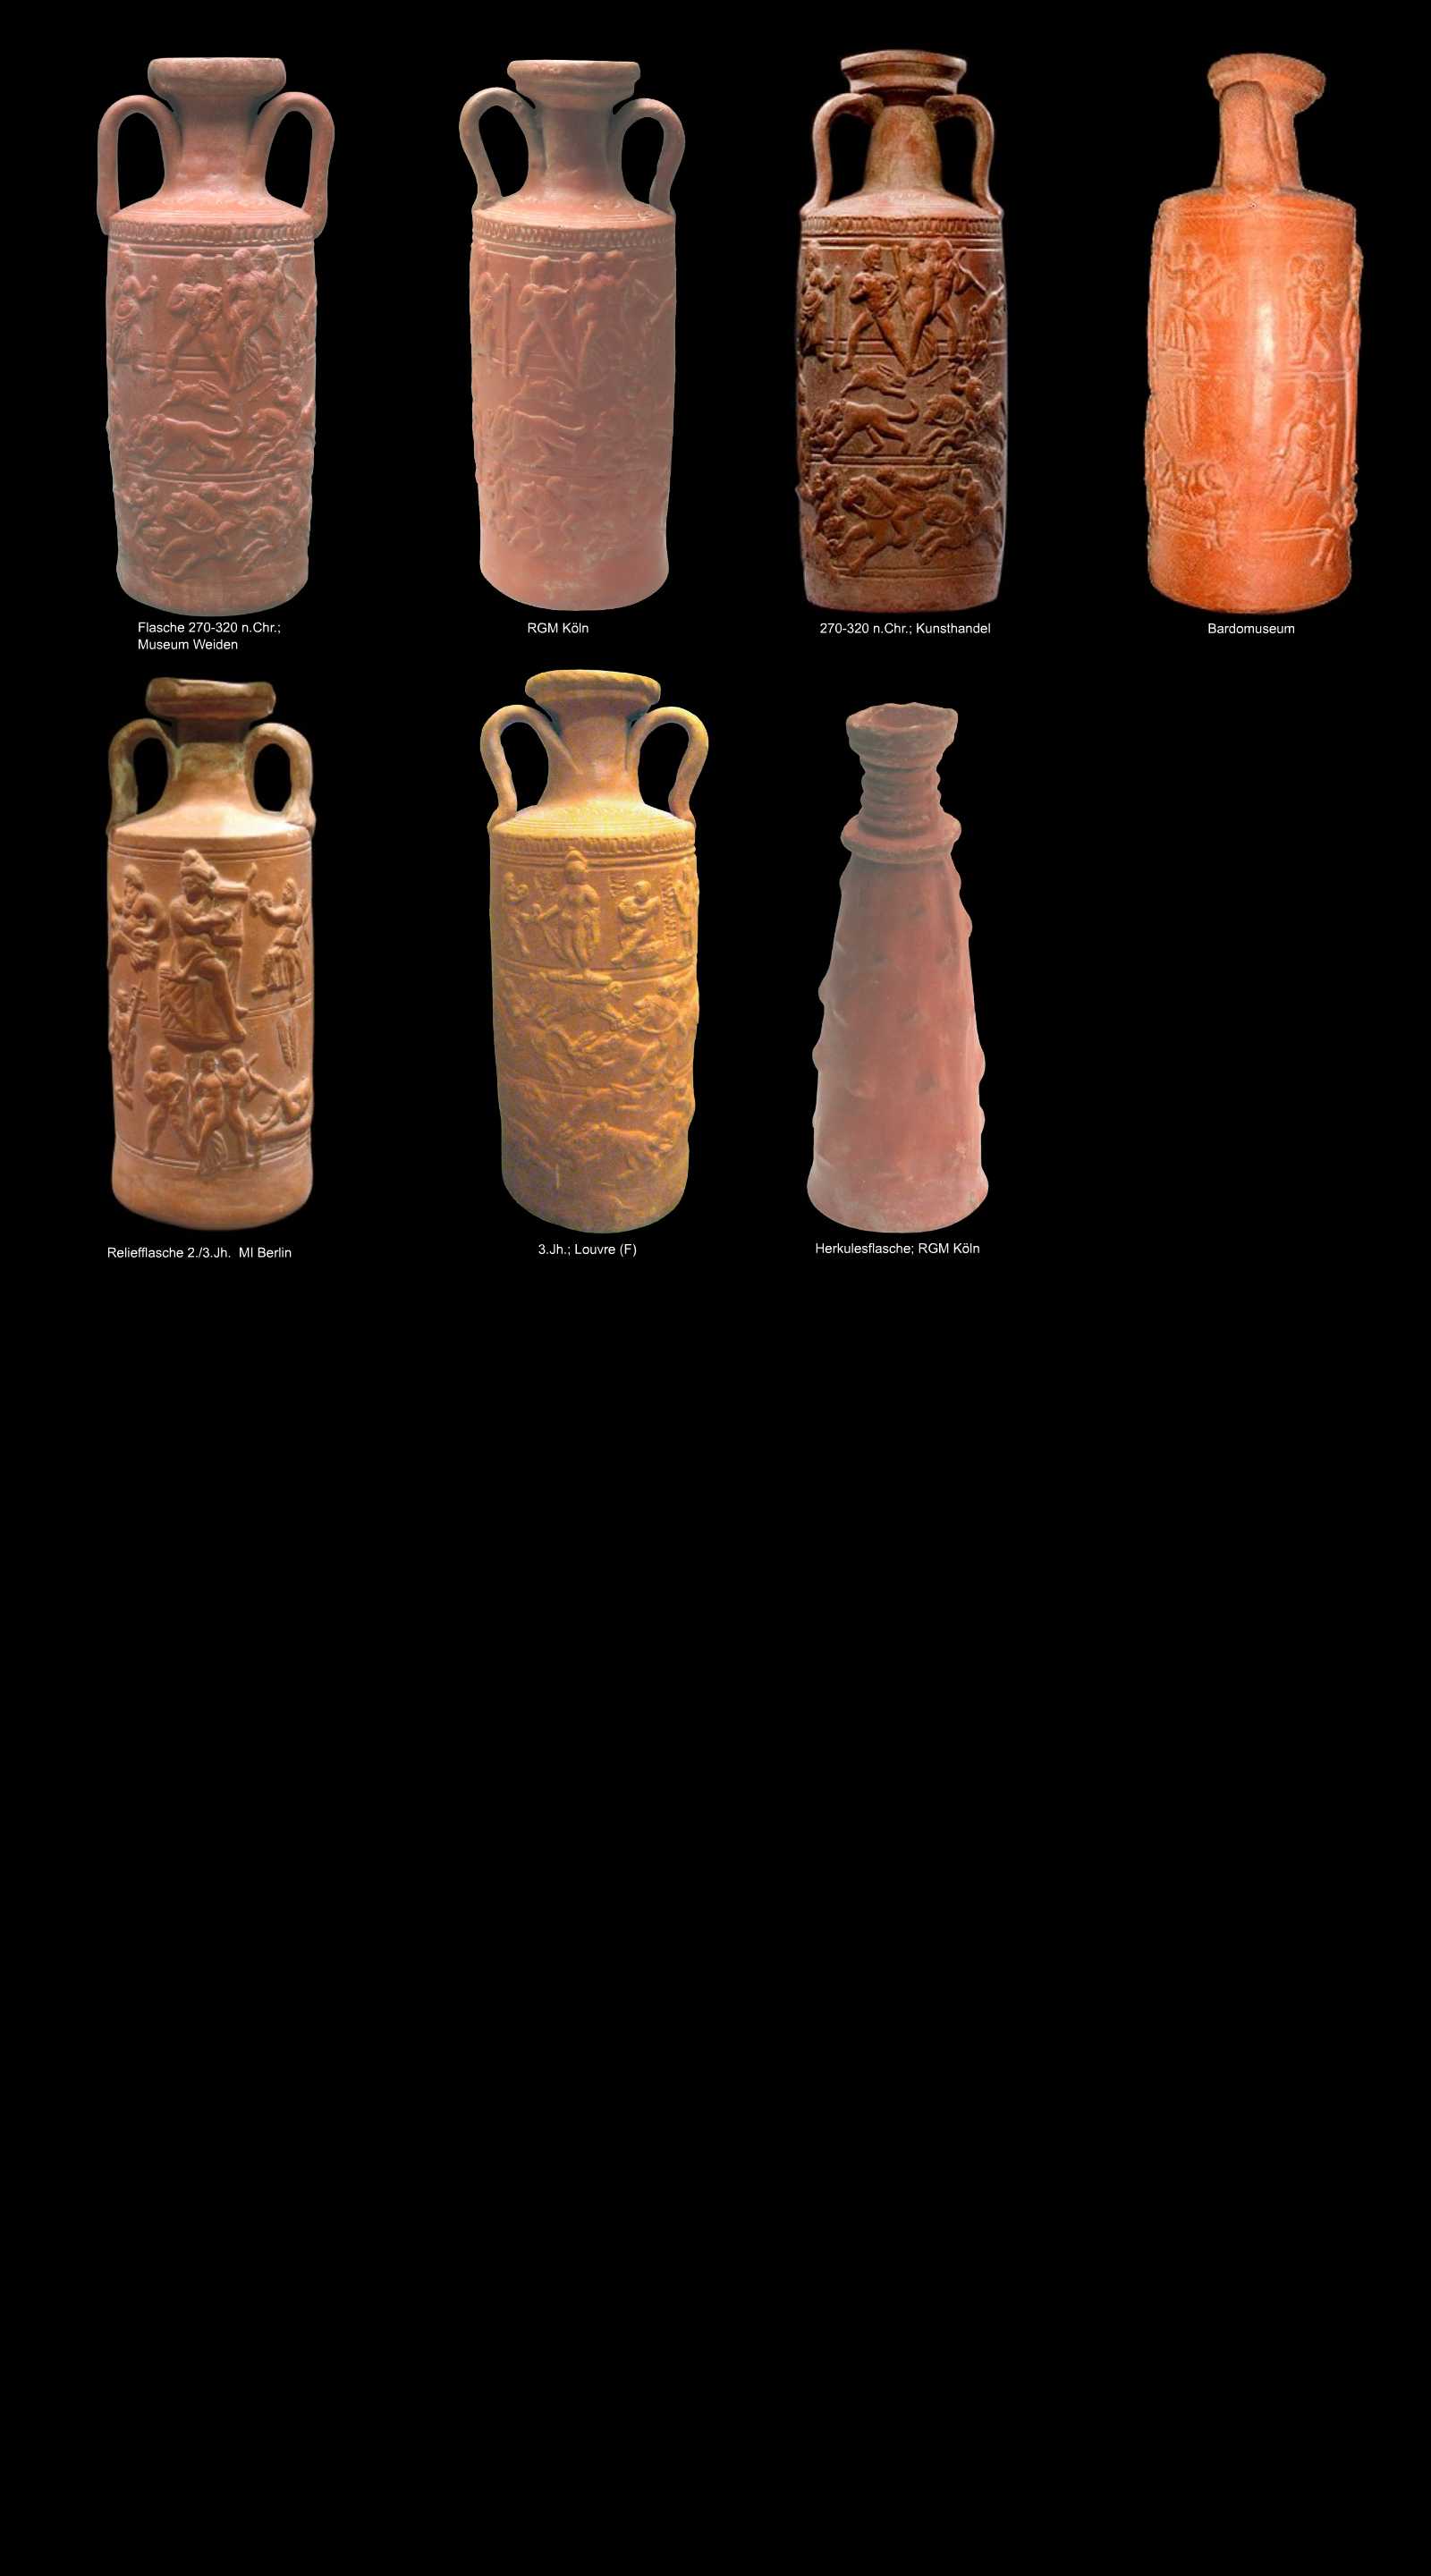 römische Keramik aus Nordafrika, Bildamphore